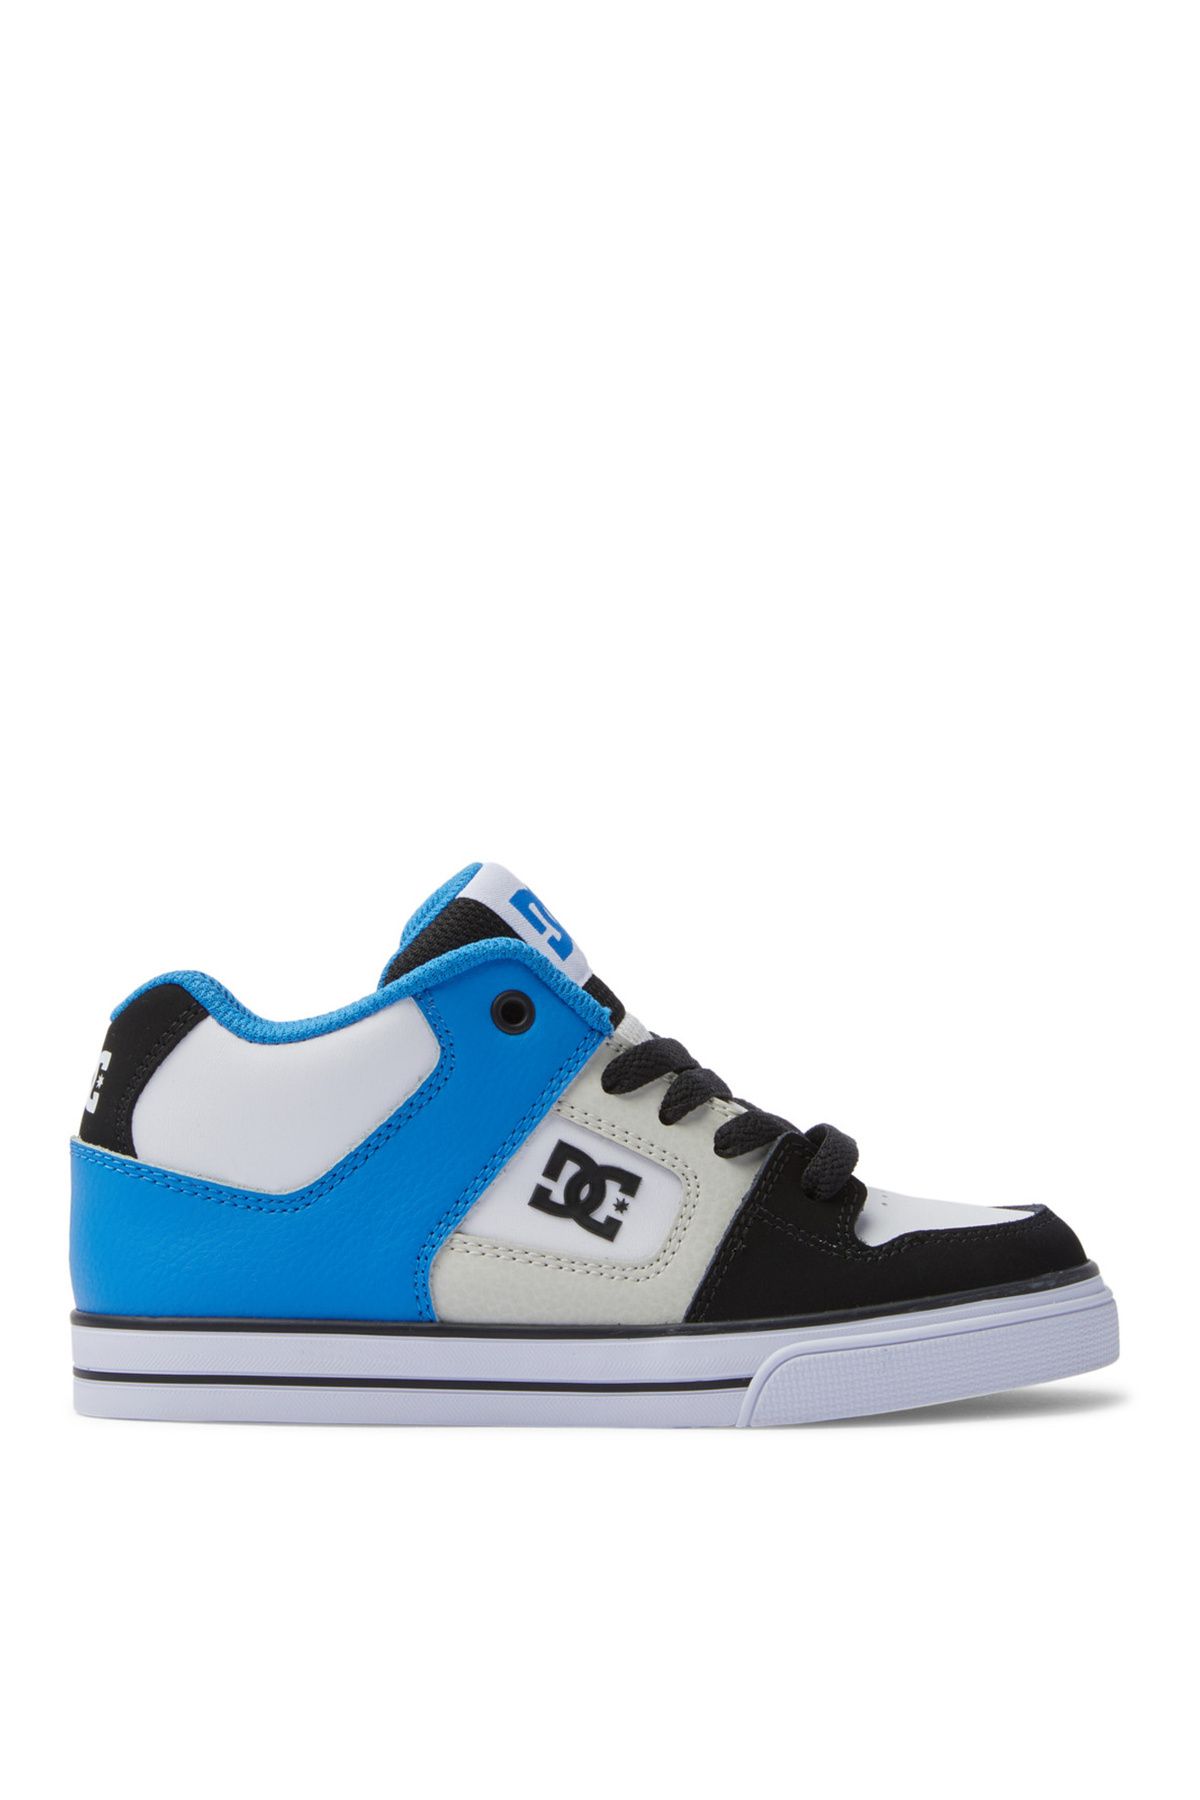 DC Gri - Mavi - Siyah Erkek Çocuk Deri + Tekstil Yürüyüş Ayakkabısı ADBS300377